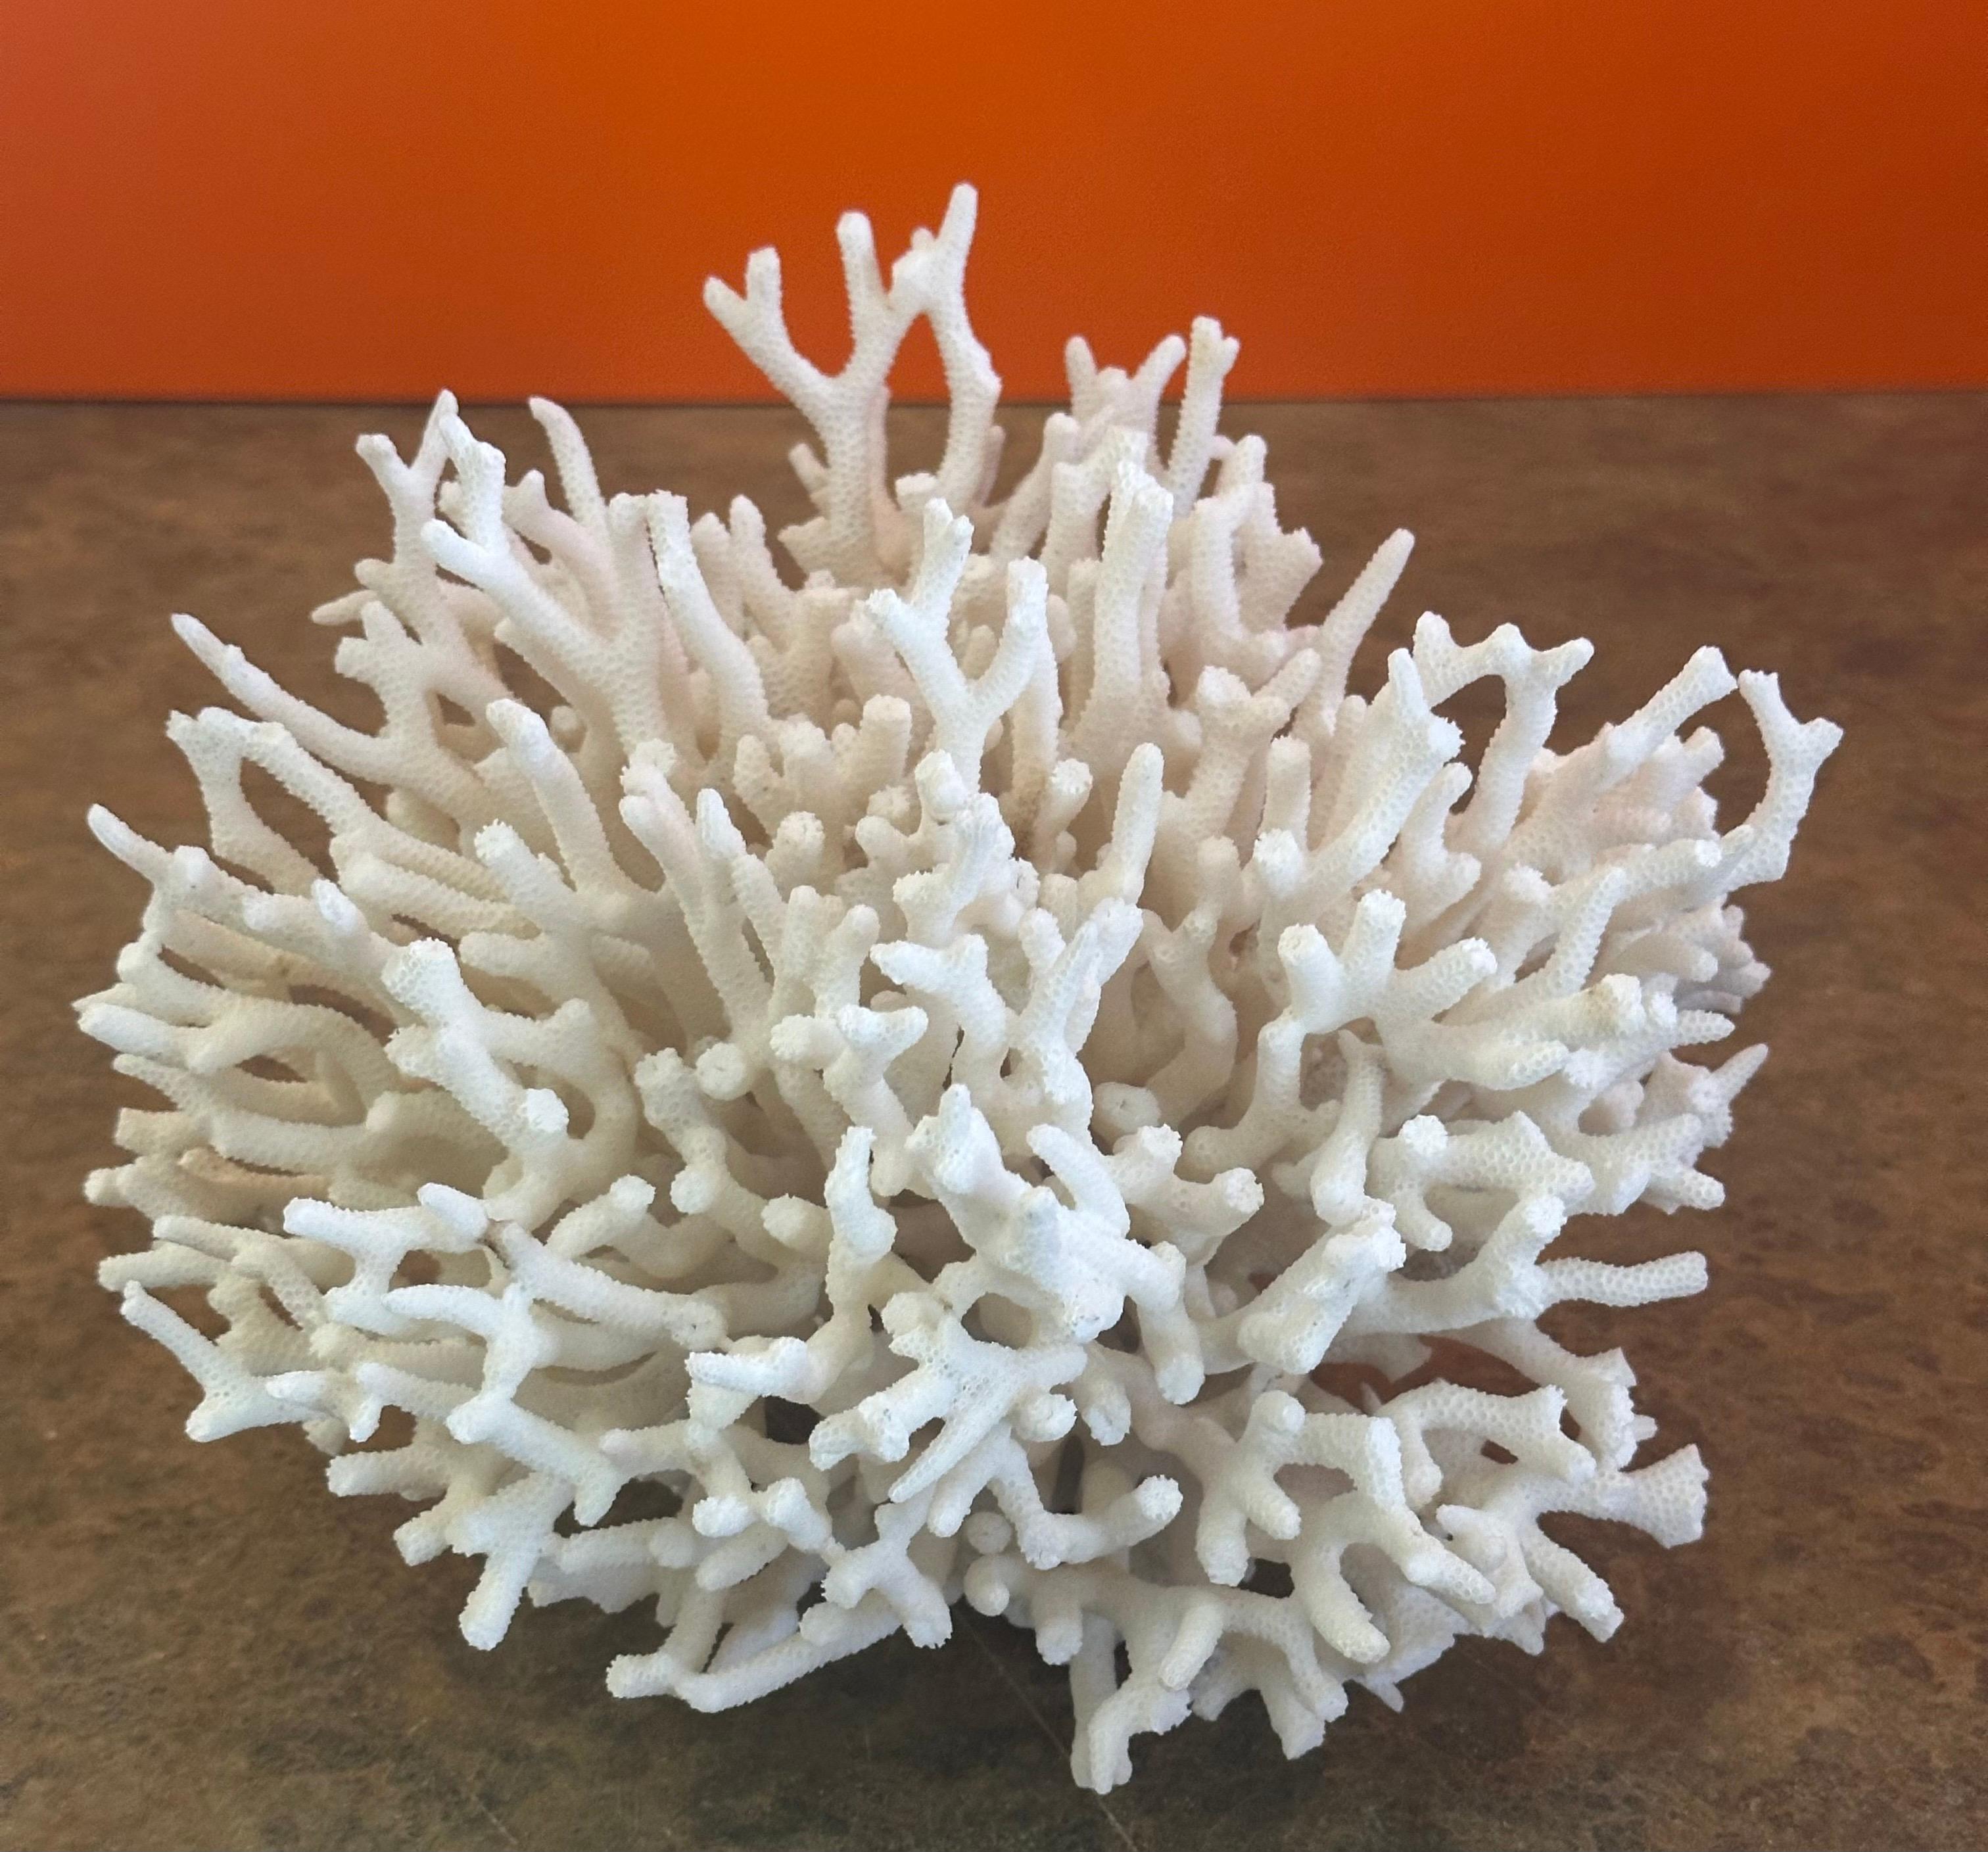 American Natural White Sea Coral Specimen For Sale